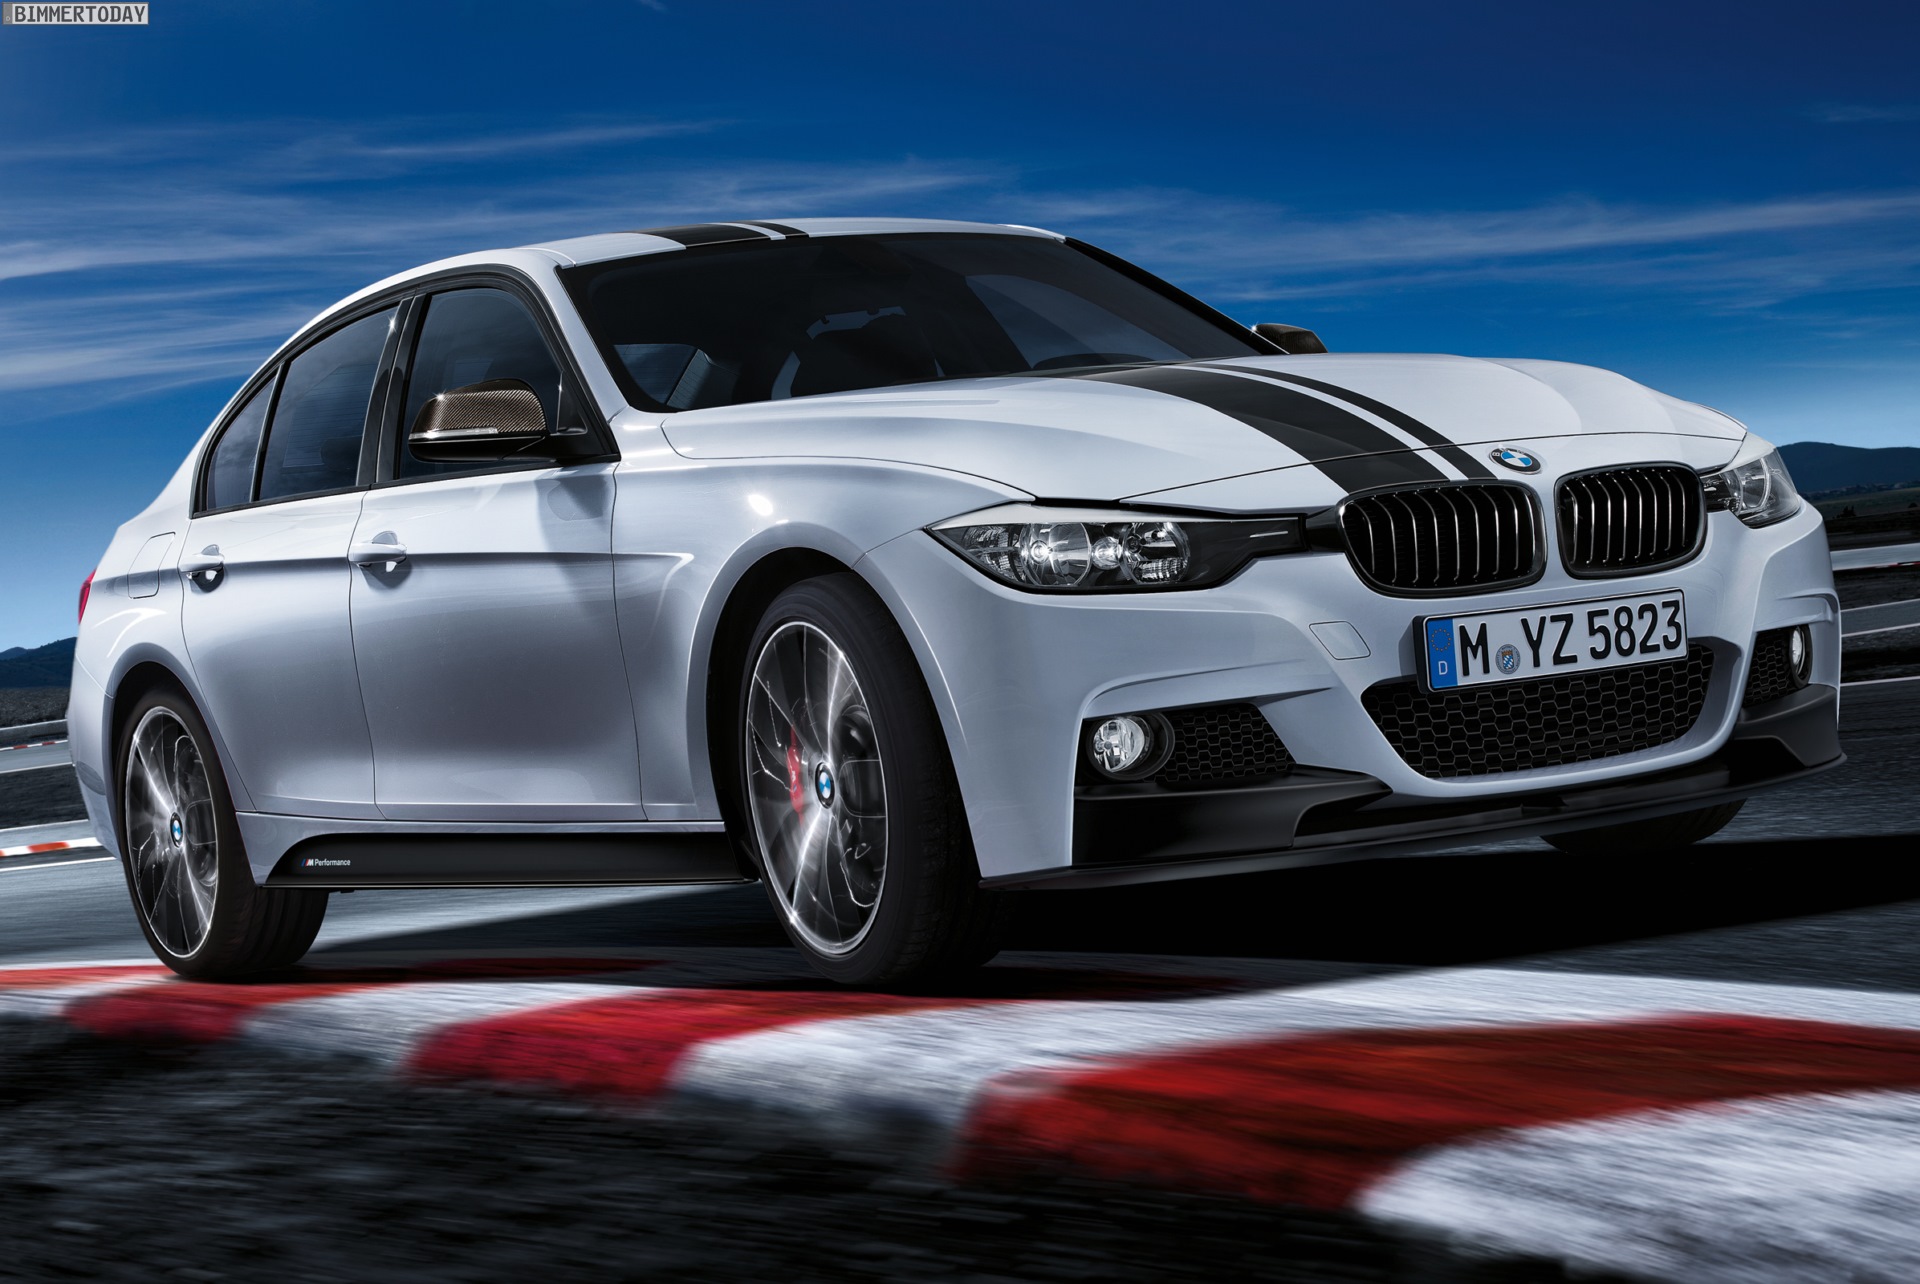 https://cdn.bimmertoday.de/wp-content/uploads/BMW-3er-F30-M-Performance-Edition-Suedafrika-2014-Zubehoer-06.jpg